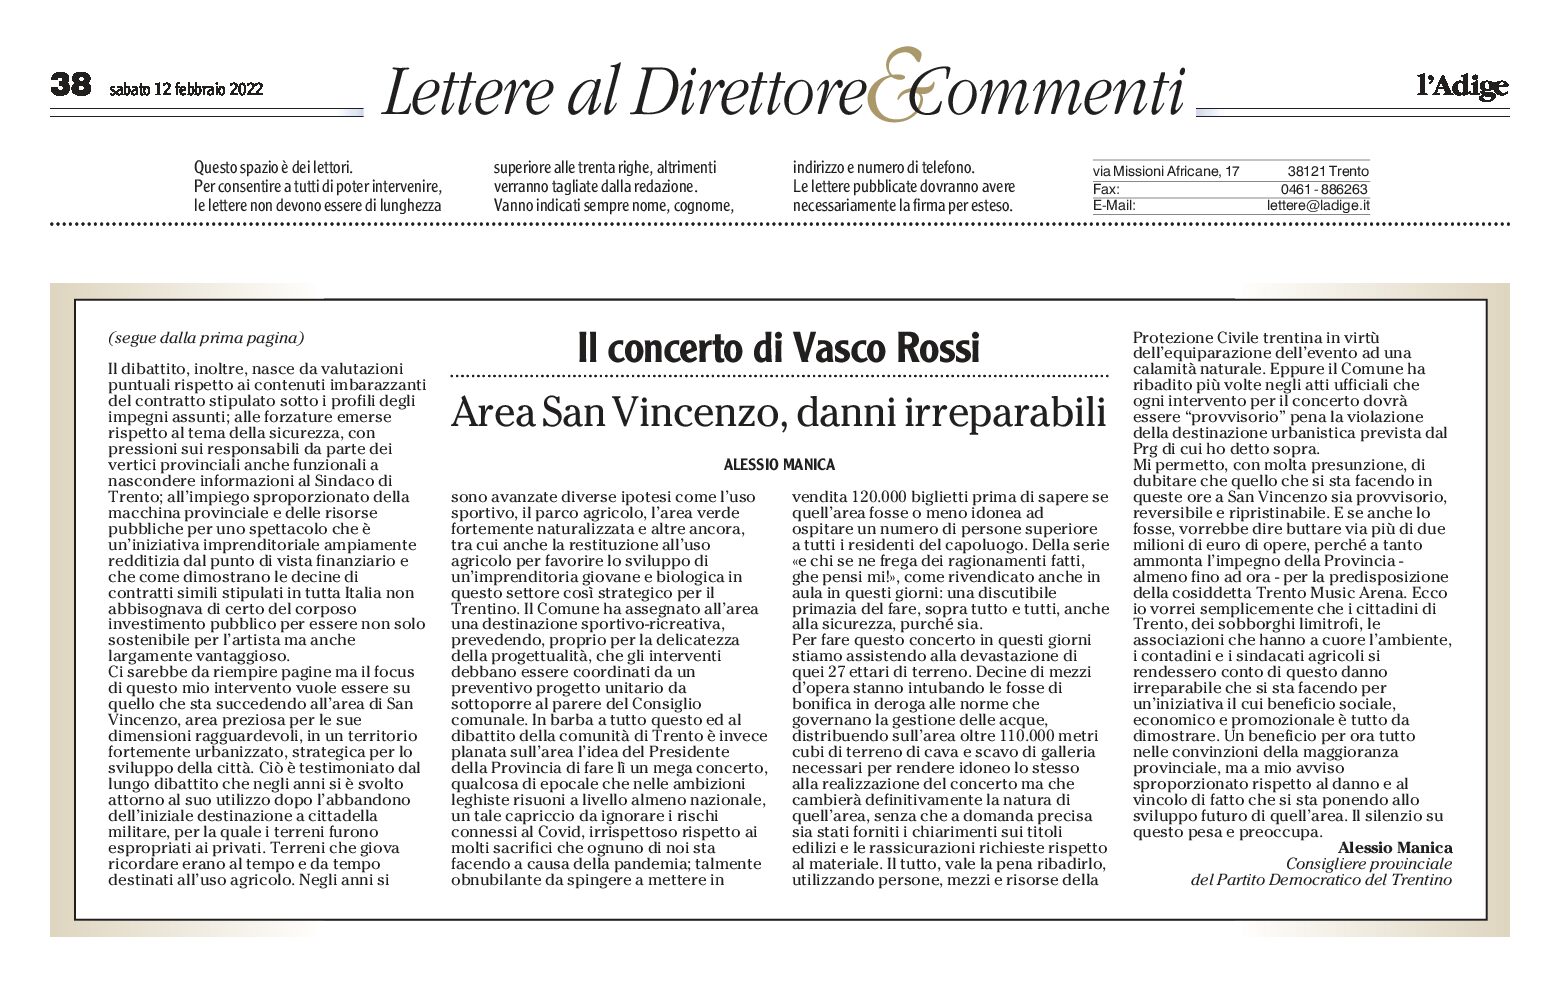 Concerto di Vasco: area San Vincenzo, danni irreparabili. Lettera di Manica